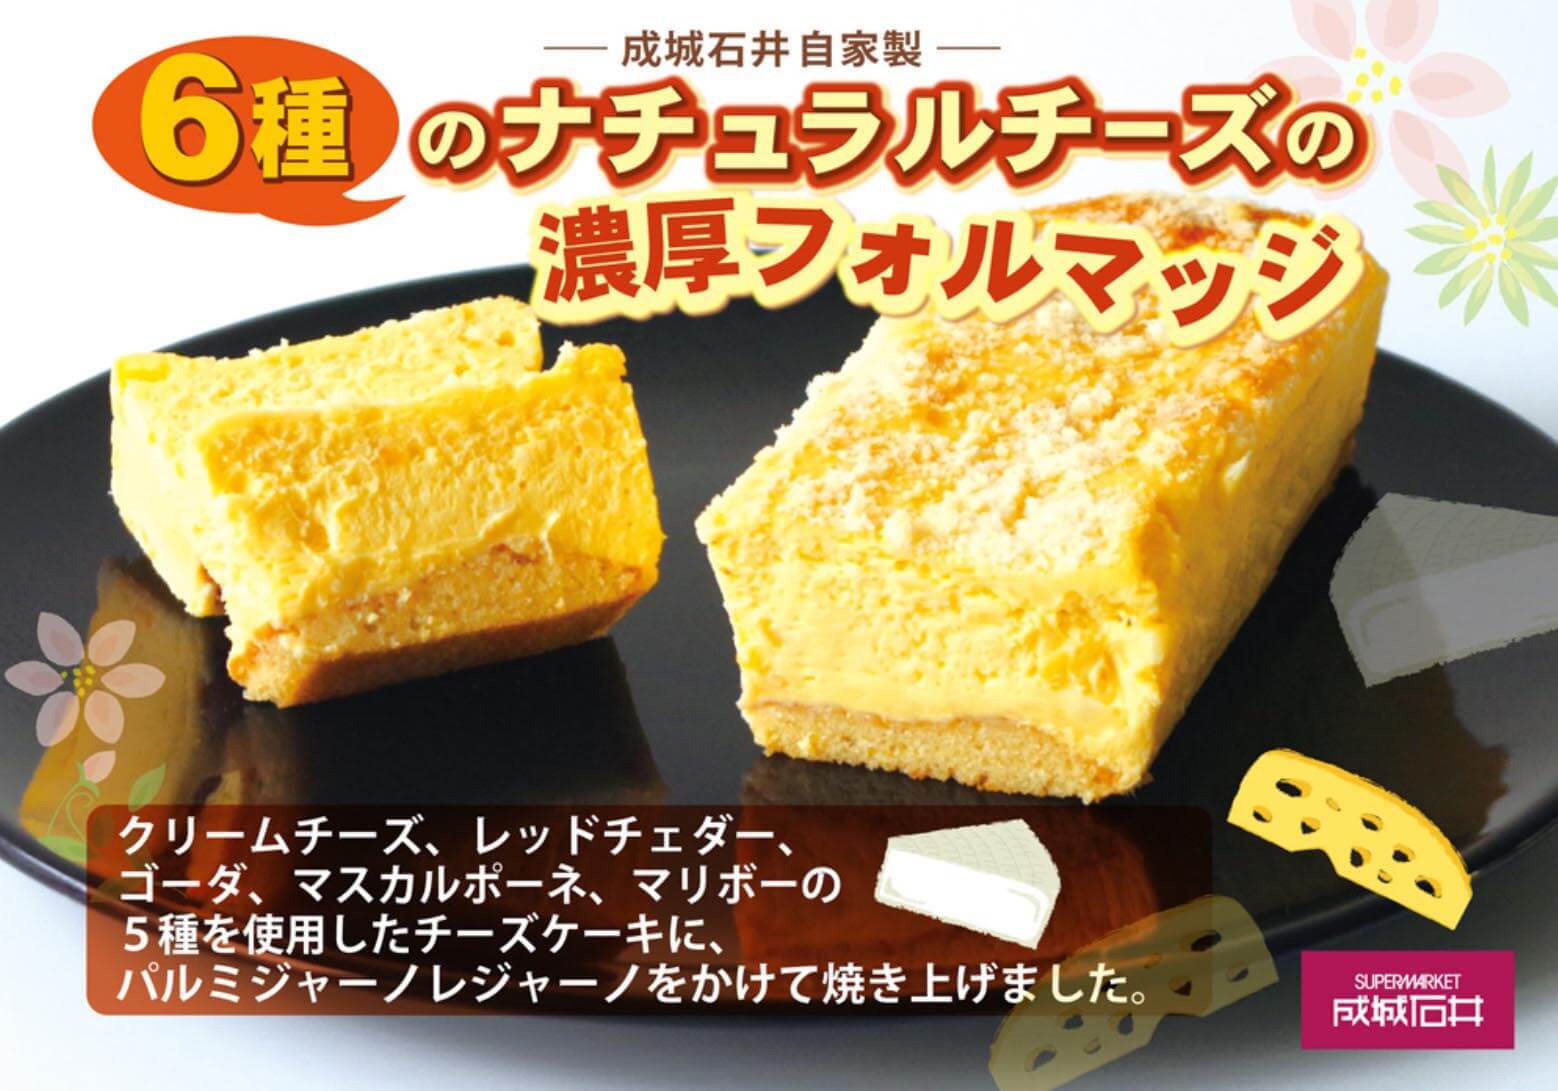 成城石井スイーツ・ナンバー1…「6種チーズの濃厚フォルマッジ」が密かにブームの画像1